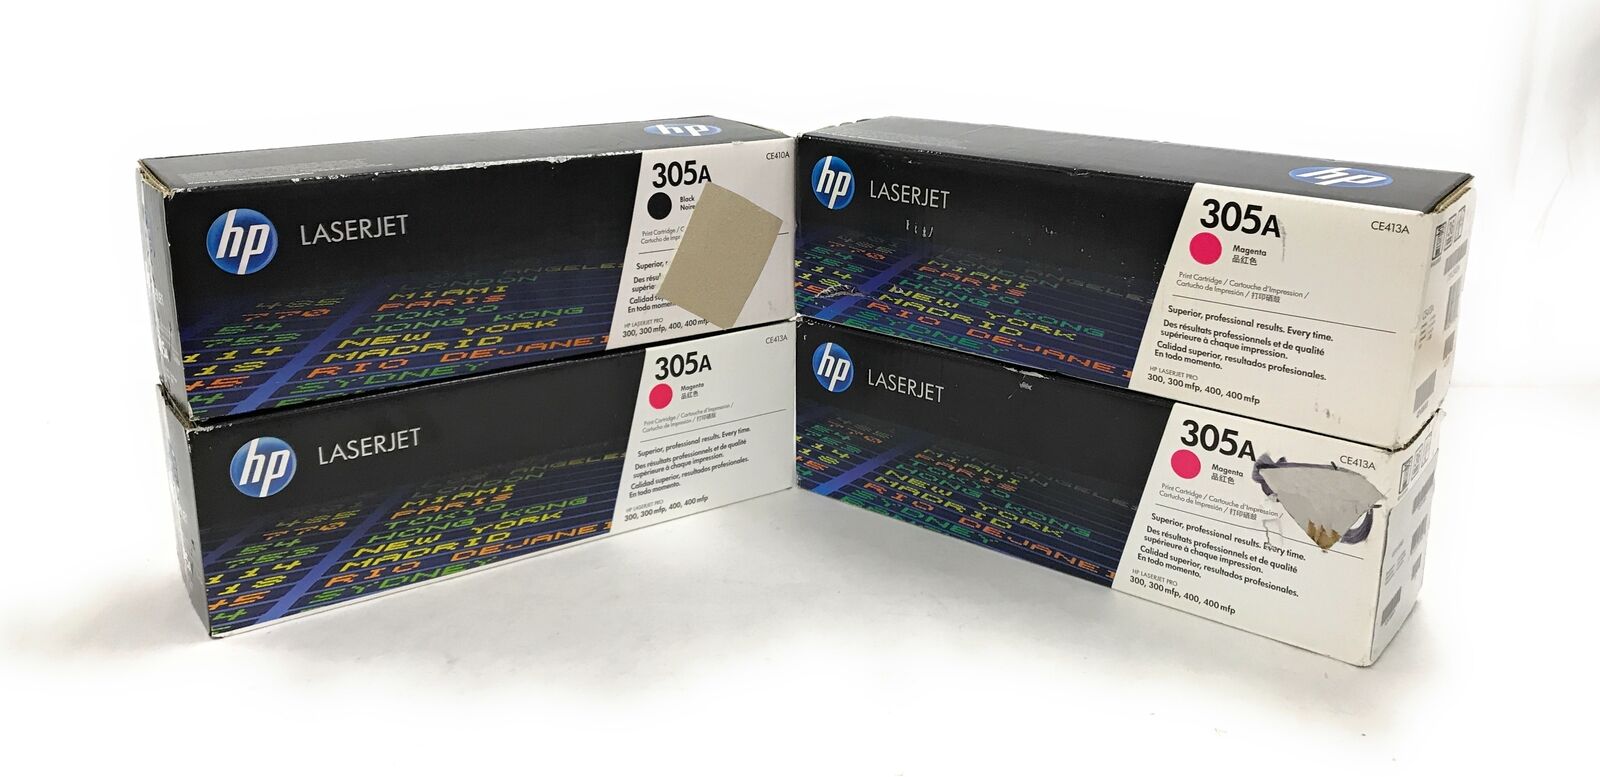 Lot of 4 NEW HP 305A Toner Cartridges CE410/413 3x Magenta 1x Black